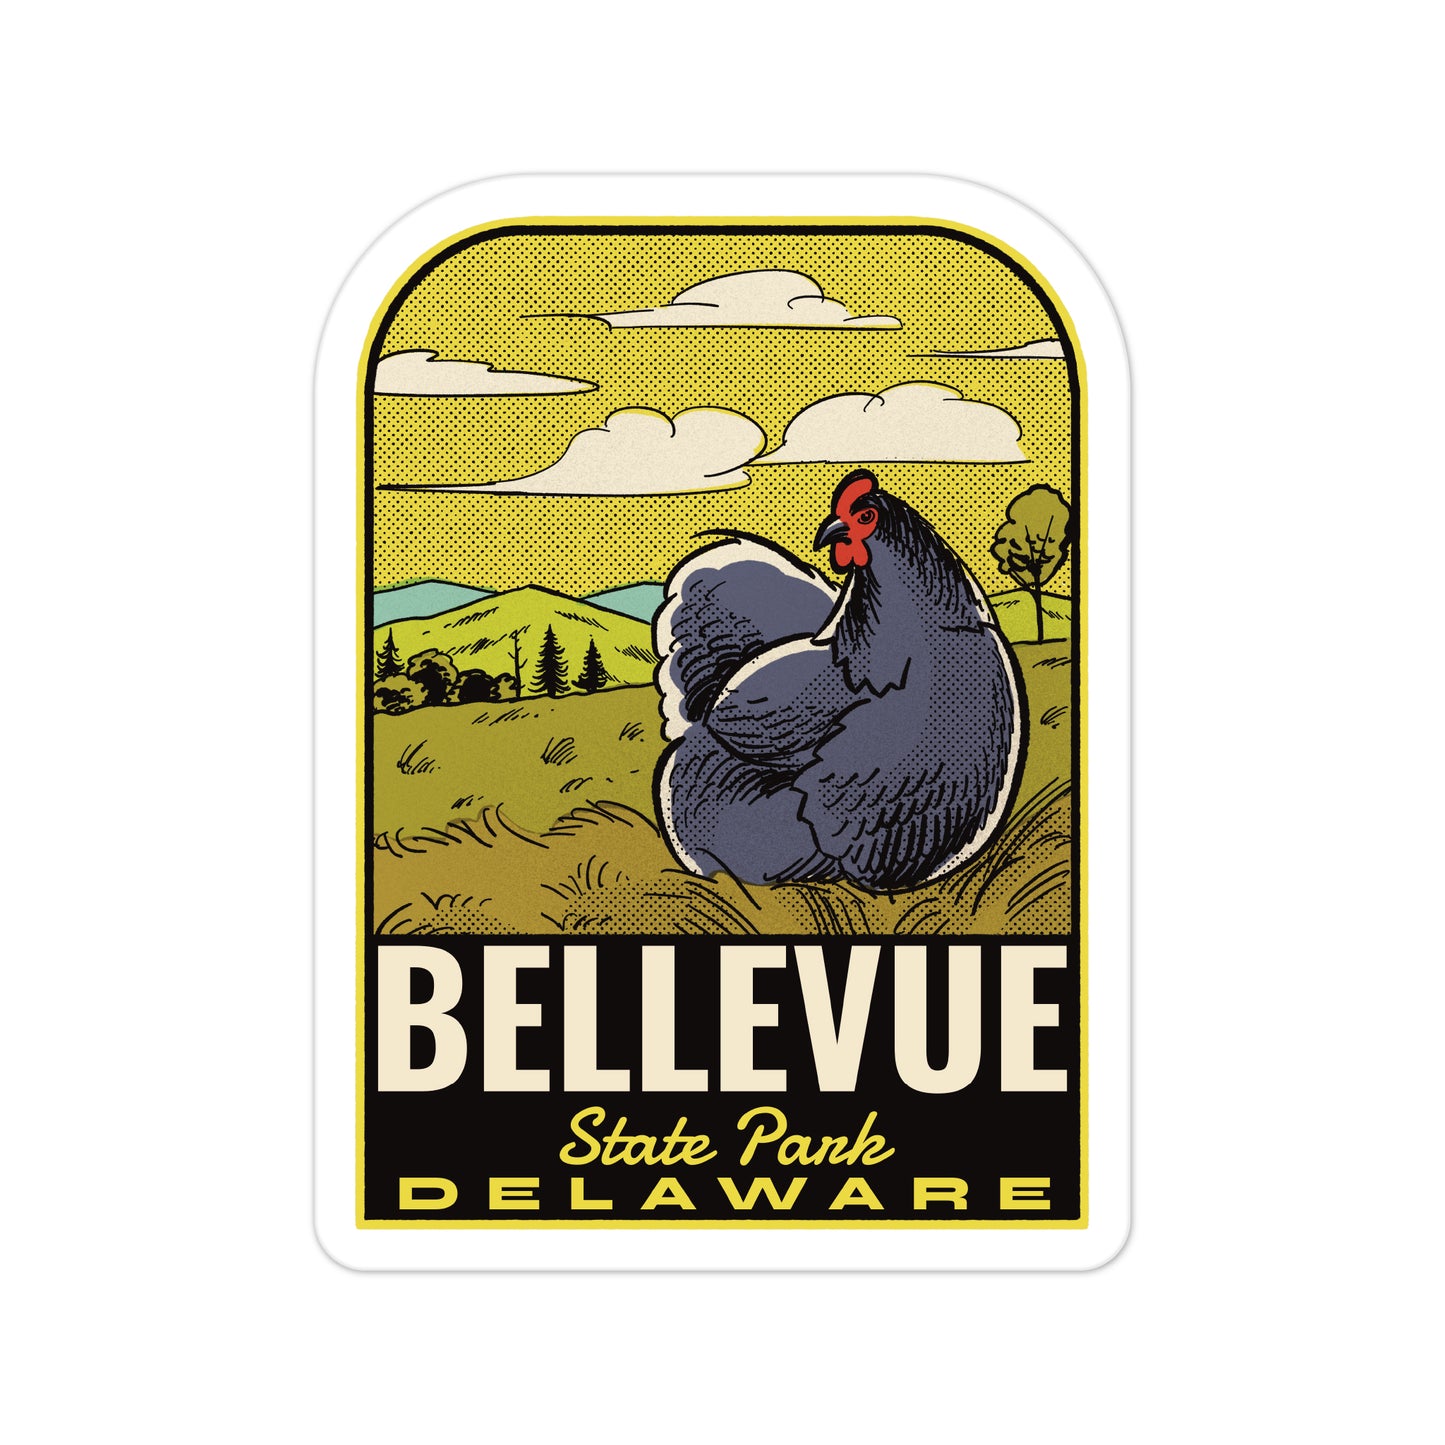 A sticker of Bellevue State Park